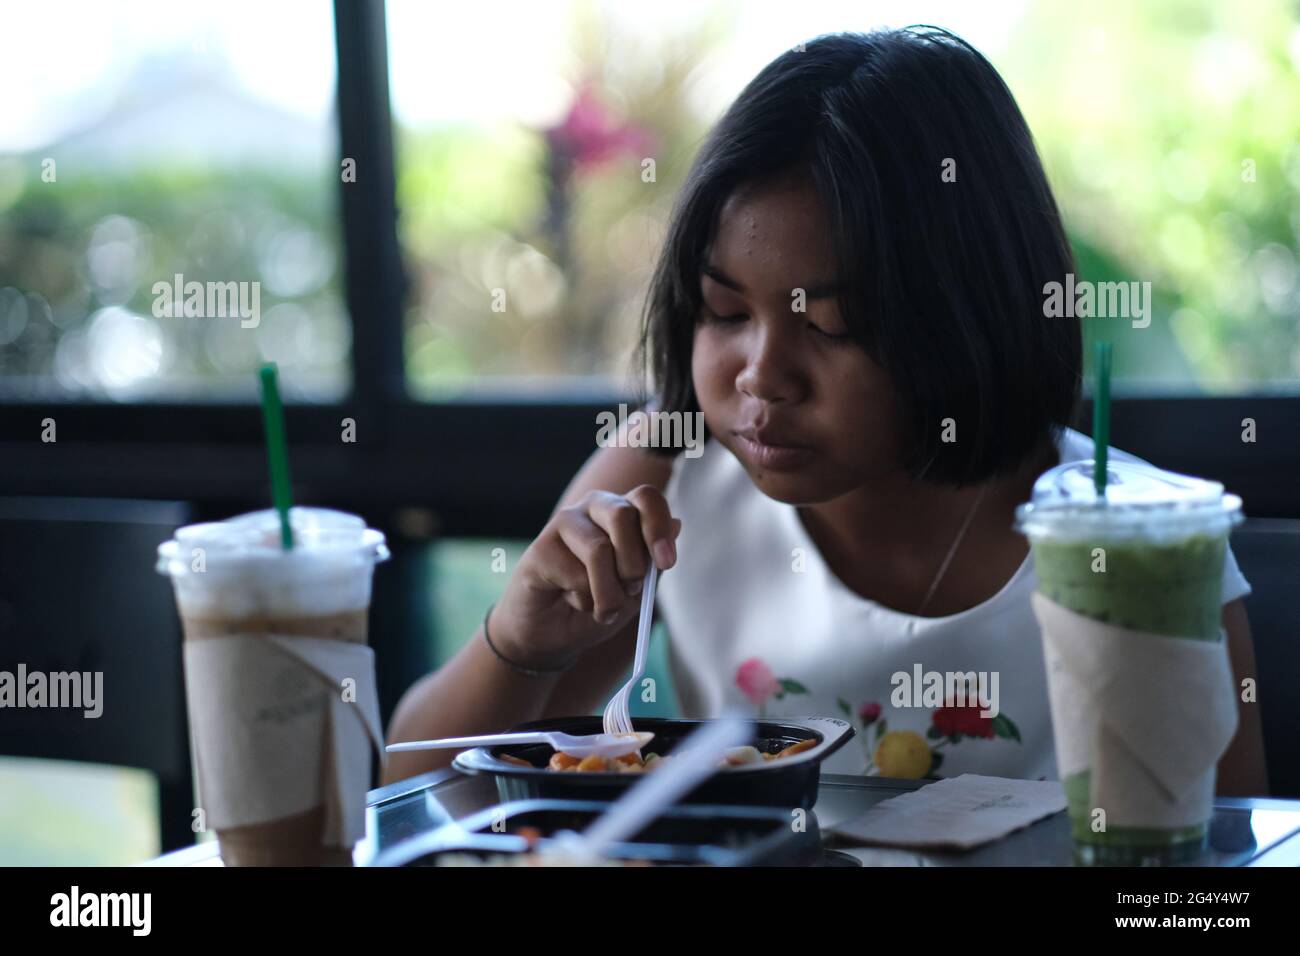 Ein thailändisches Mädchen im Teenageralter frühstückt, was offensichtlich sehr angenehm ist Stockfoto